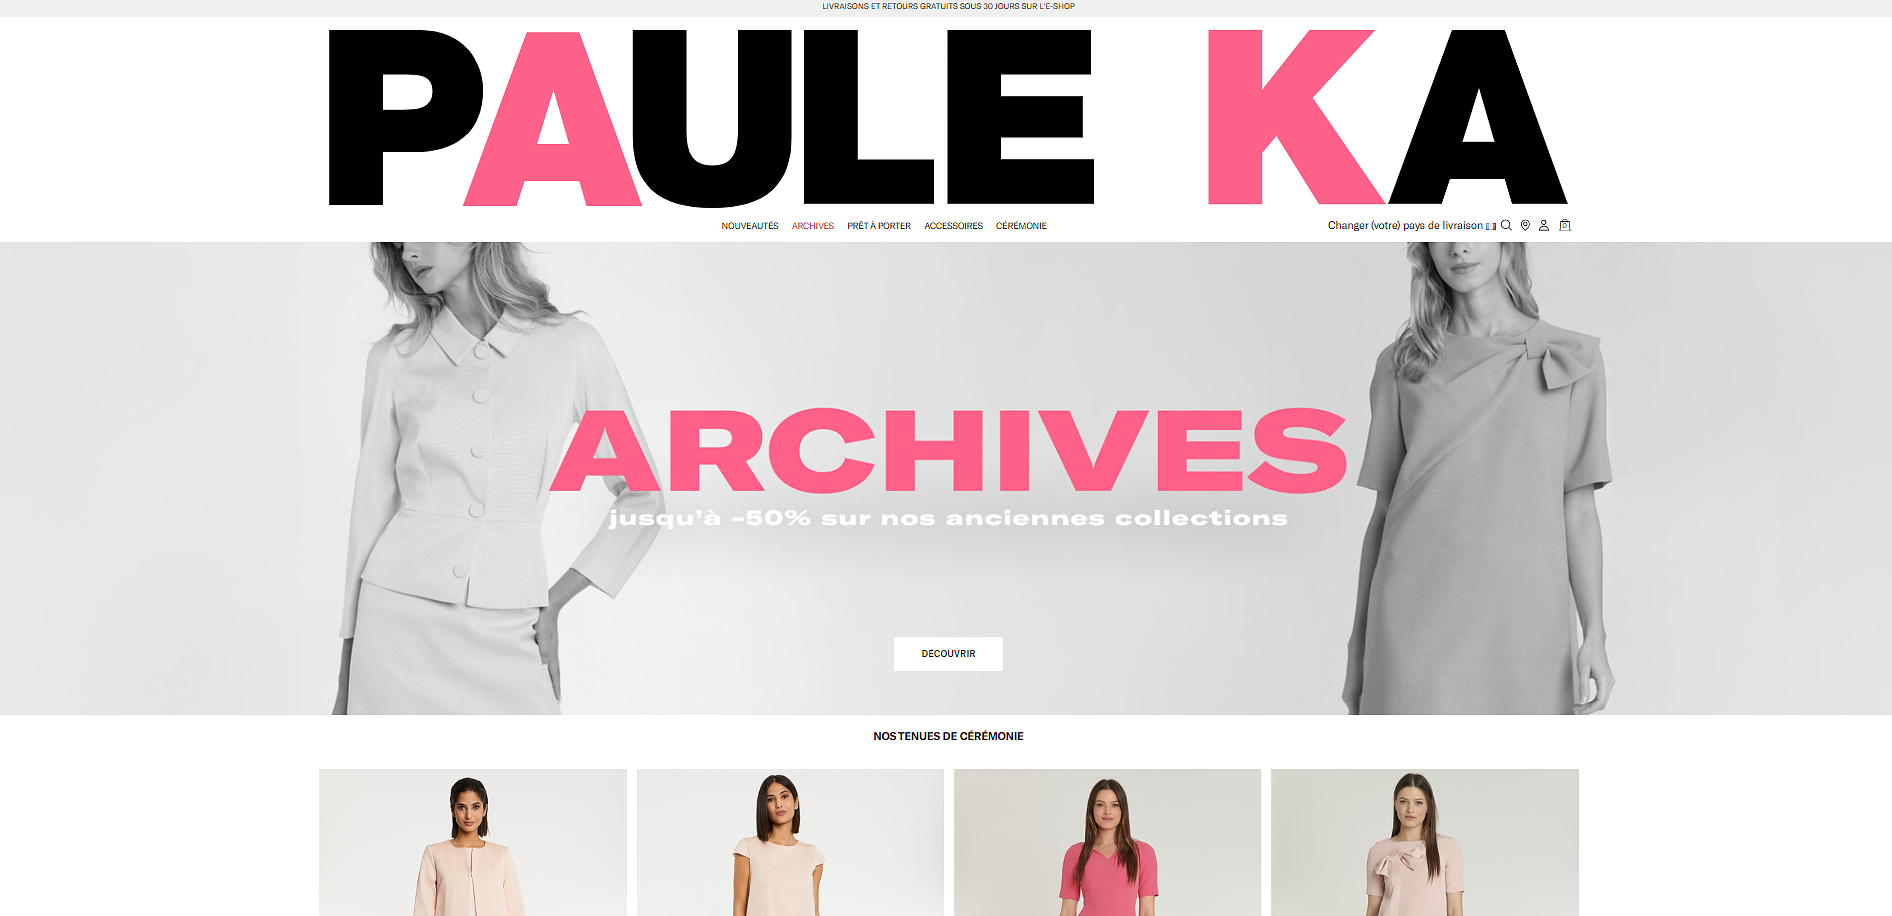 Ready-to-wear brand Paule Ka in receivership